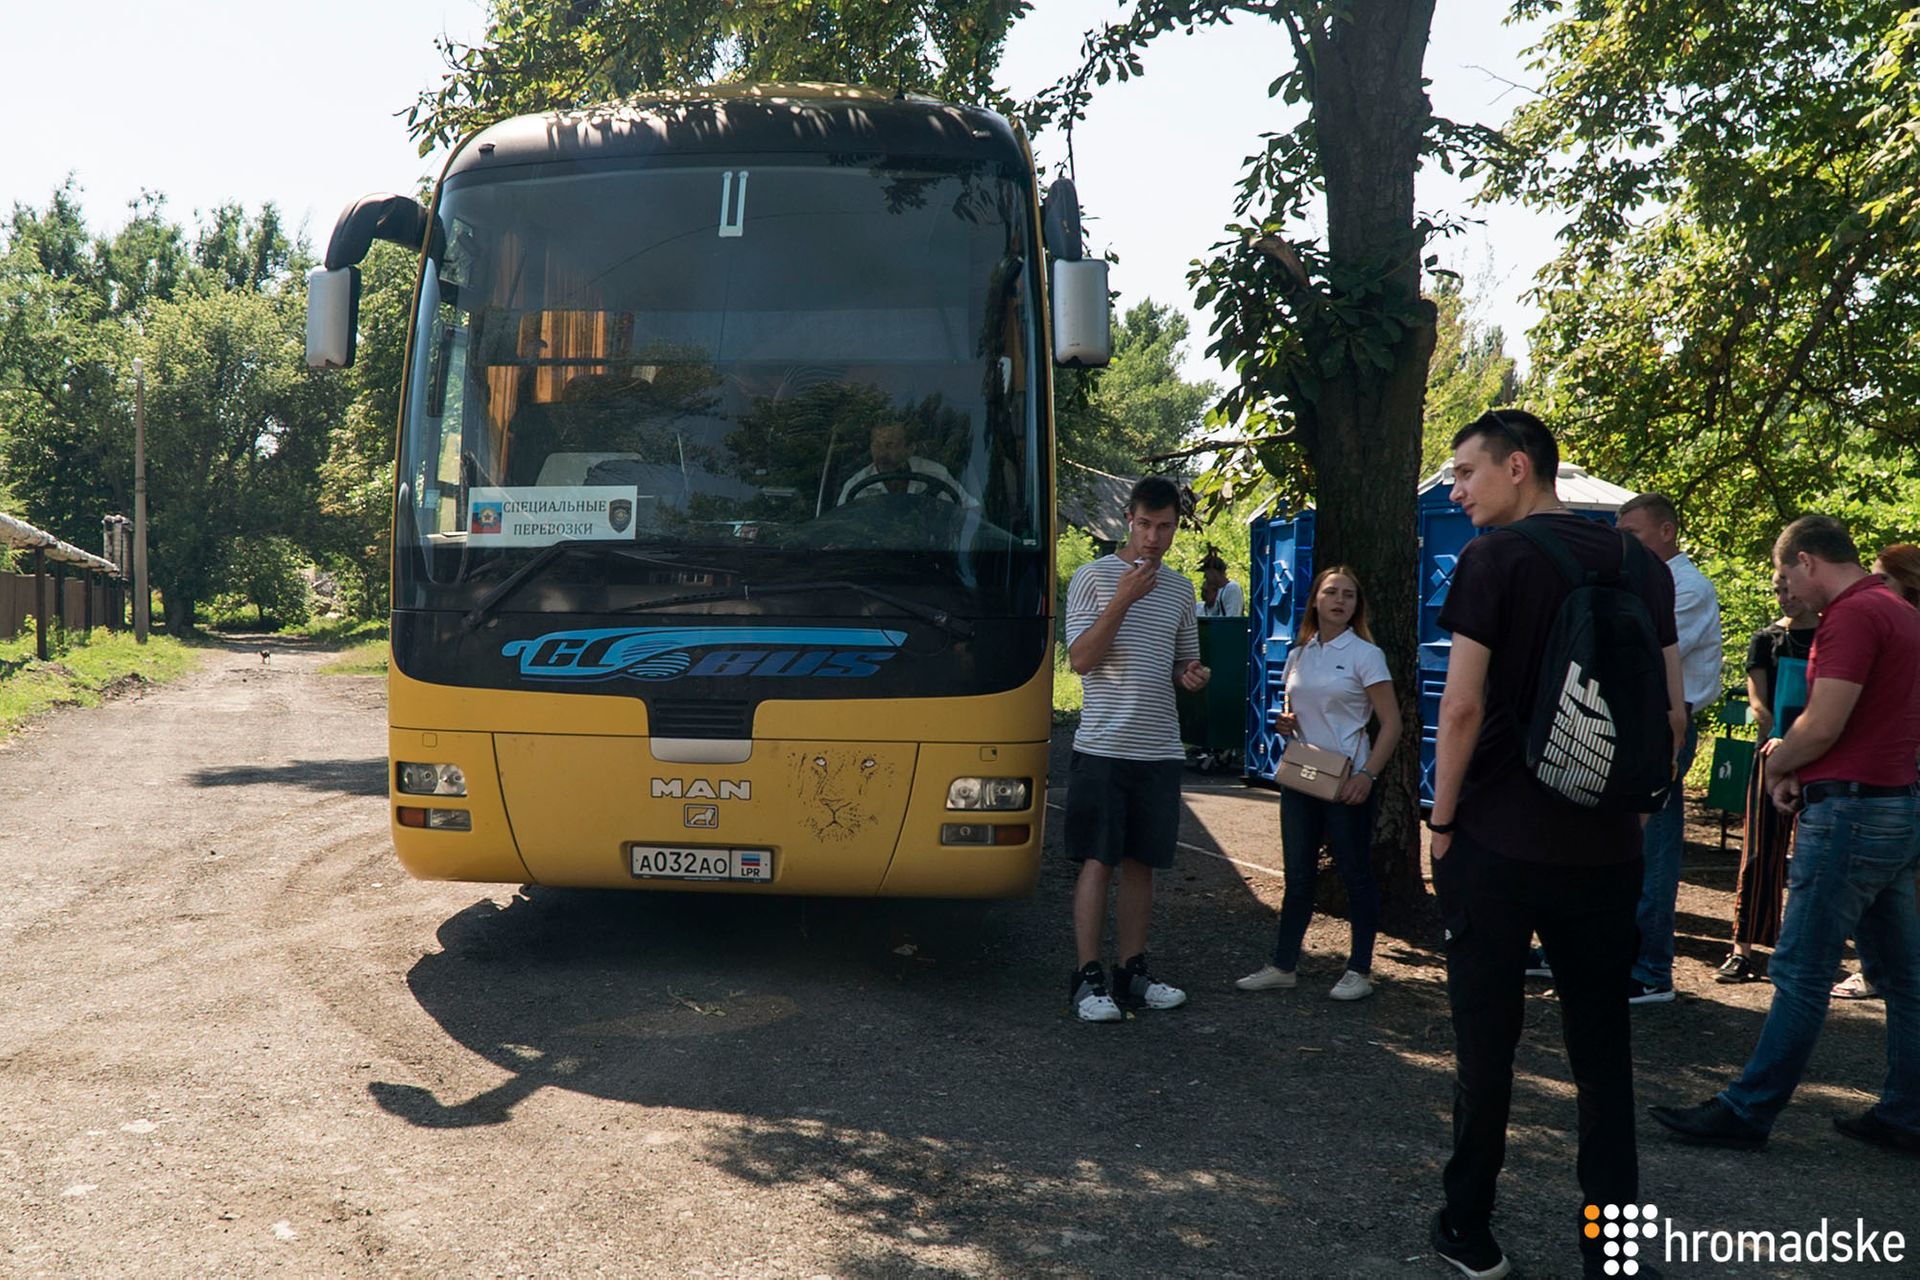 Автобус с номерами  ДНР и ЛНР привозит украинцев, которые хотят получить паспорт гражданина РФ, Новошахтинск, 18 июня 2019 года. Фото Александр Кохан/Громадское